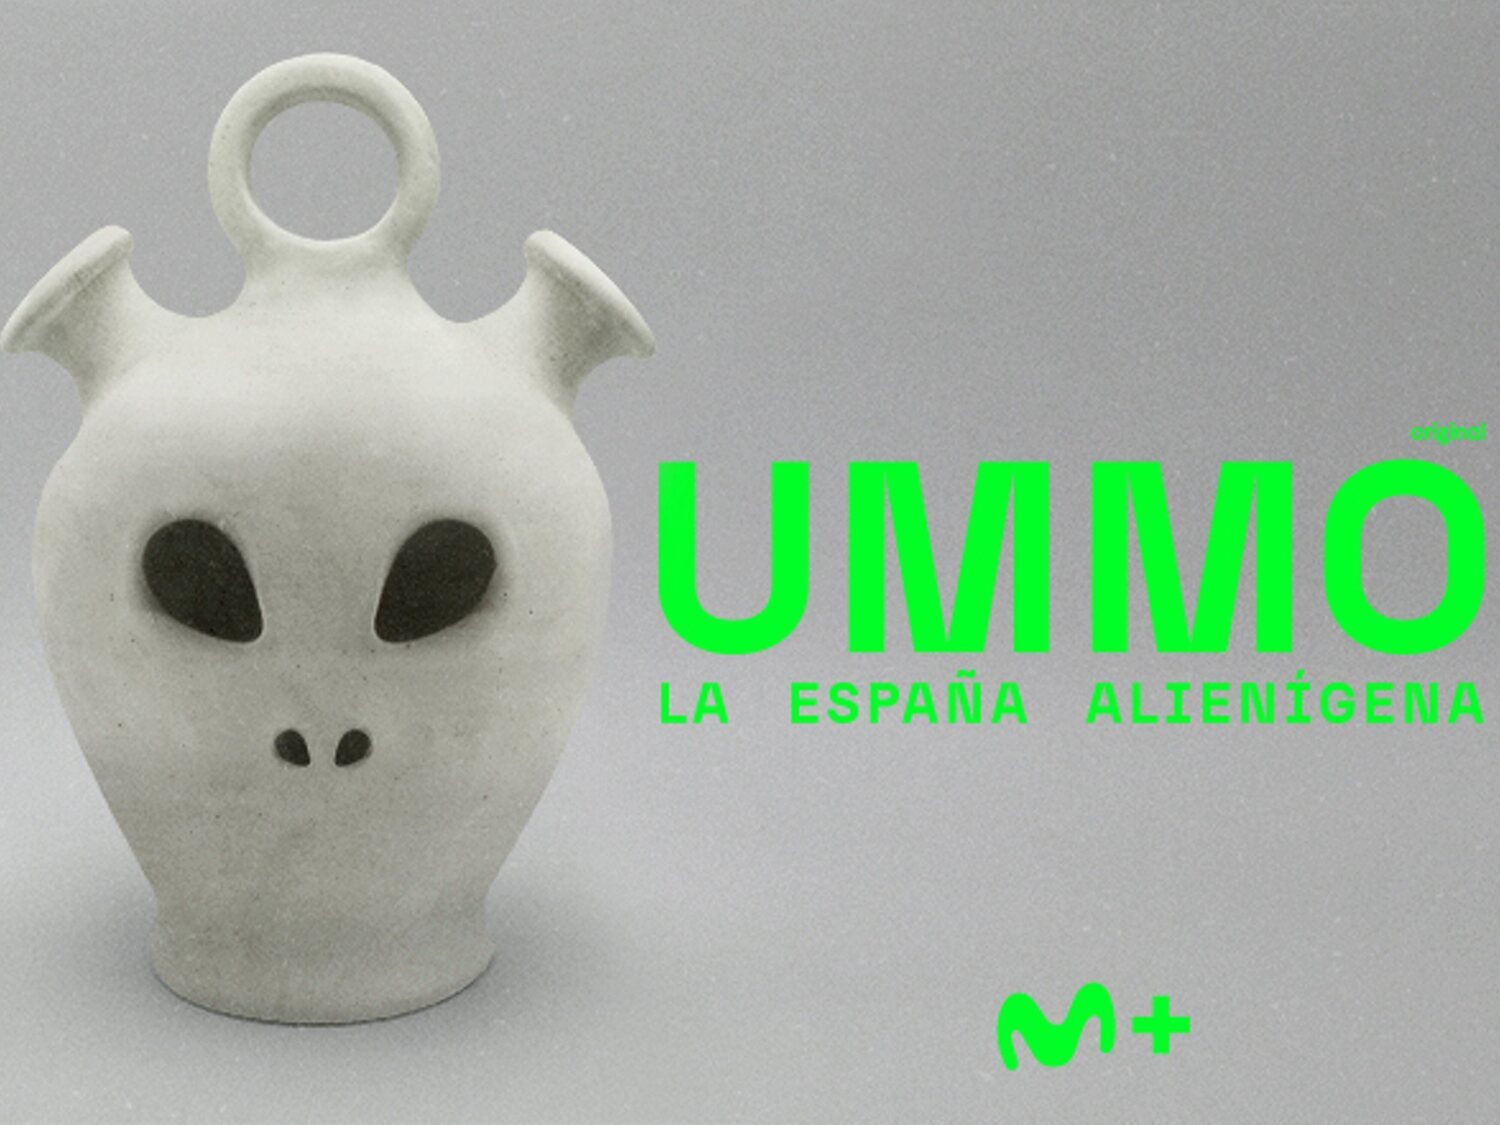 Planeta Ummo: el caso ovni más famoso de España que desata lucha de derechos con Movistar